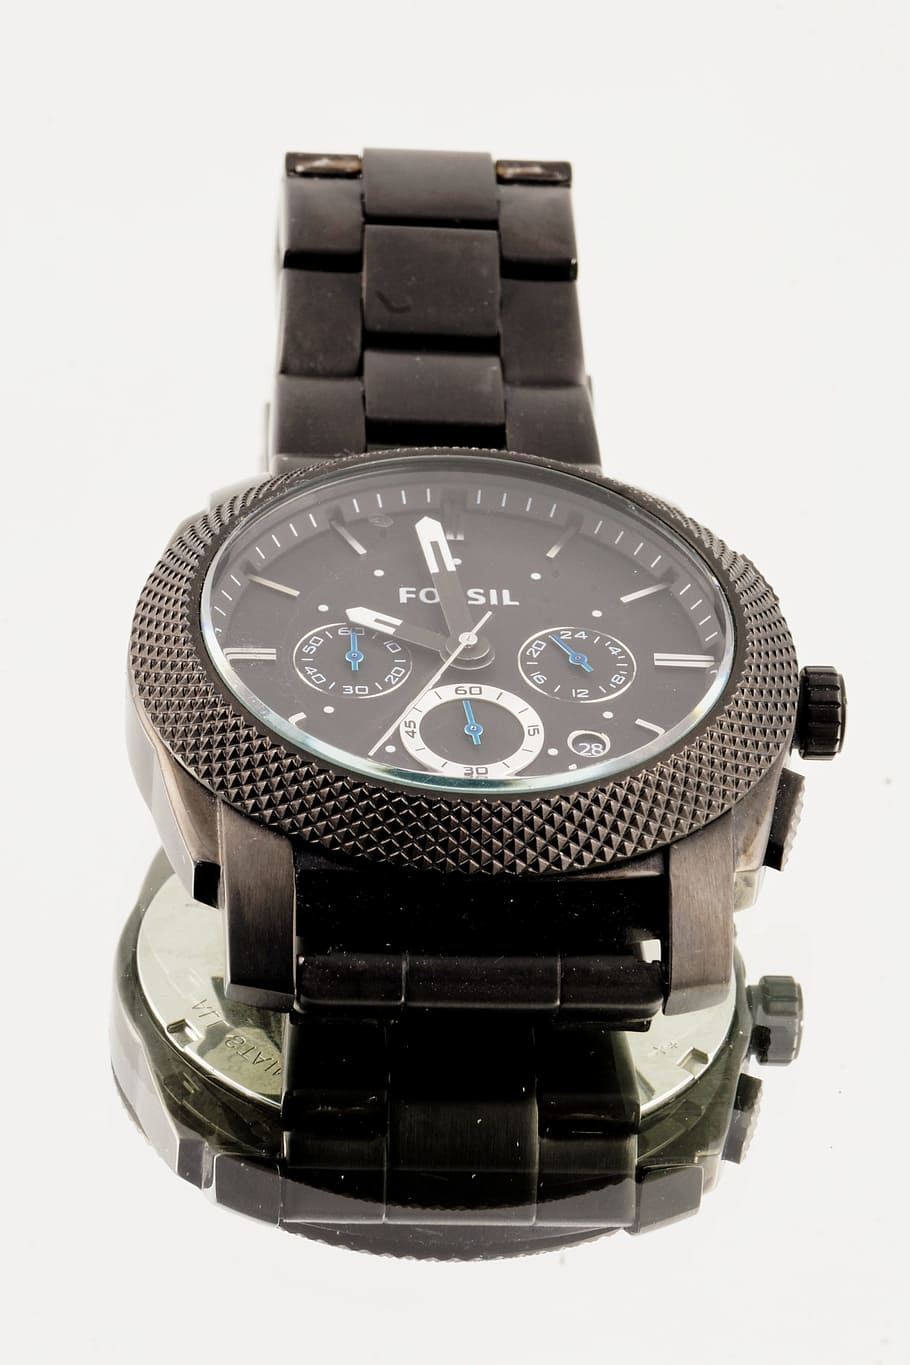 Reloj, reloj de pulsera para hombre, hora, hora de, cronómetro, metal, fósil, medición de tiempo, minutos, horas